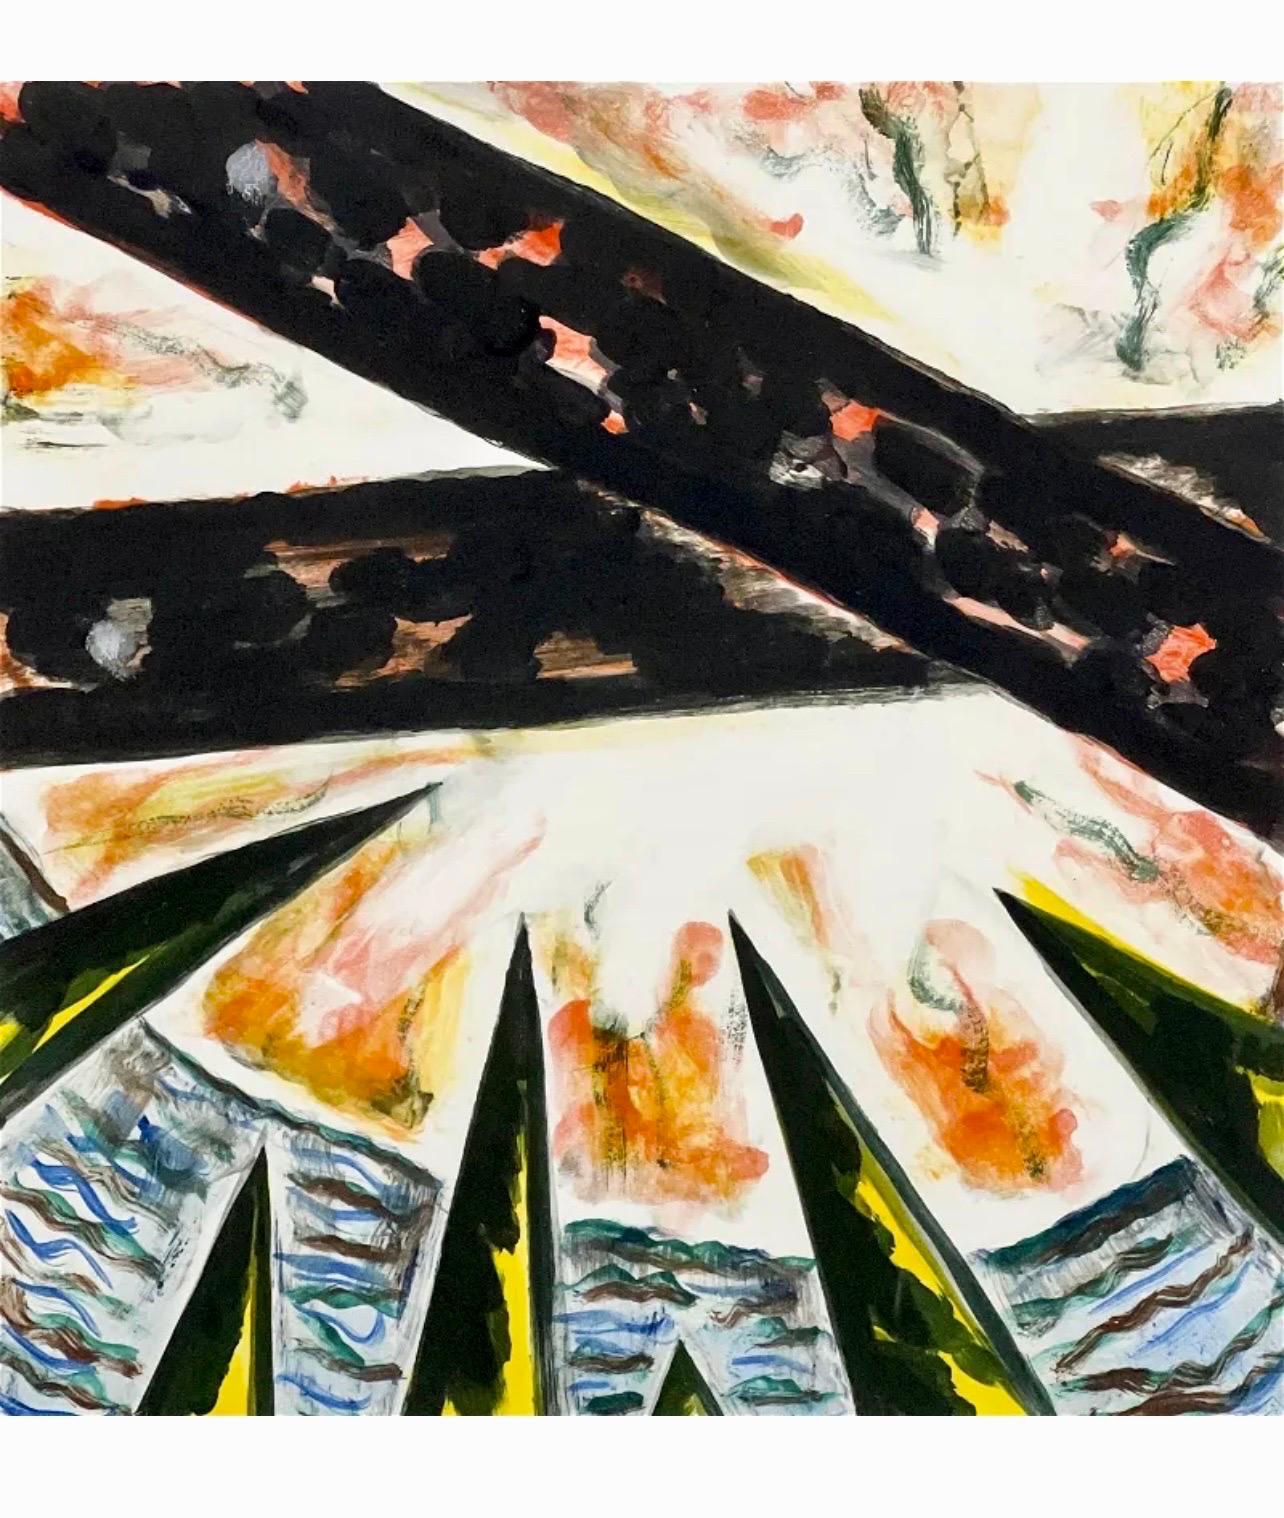 Gregory Amenoff (zeitgenössischer amerikanischer abstrakter Maler, geb. 1948),  
Monotypie Monoprint (1990)
Handsigniert mit Bleistift unten rechts
Platte: 16 x 16 Zoll
Abmessungen des Rahmens: 35 1/8 x 29 1/8 x 1 5/8 Zoll, Holzrahmen mit